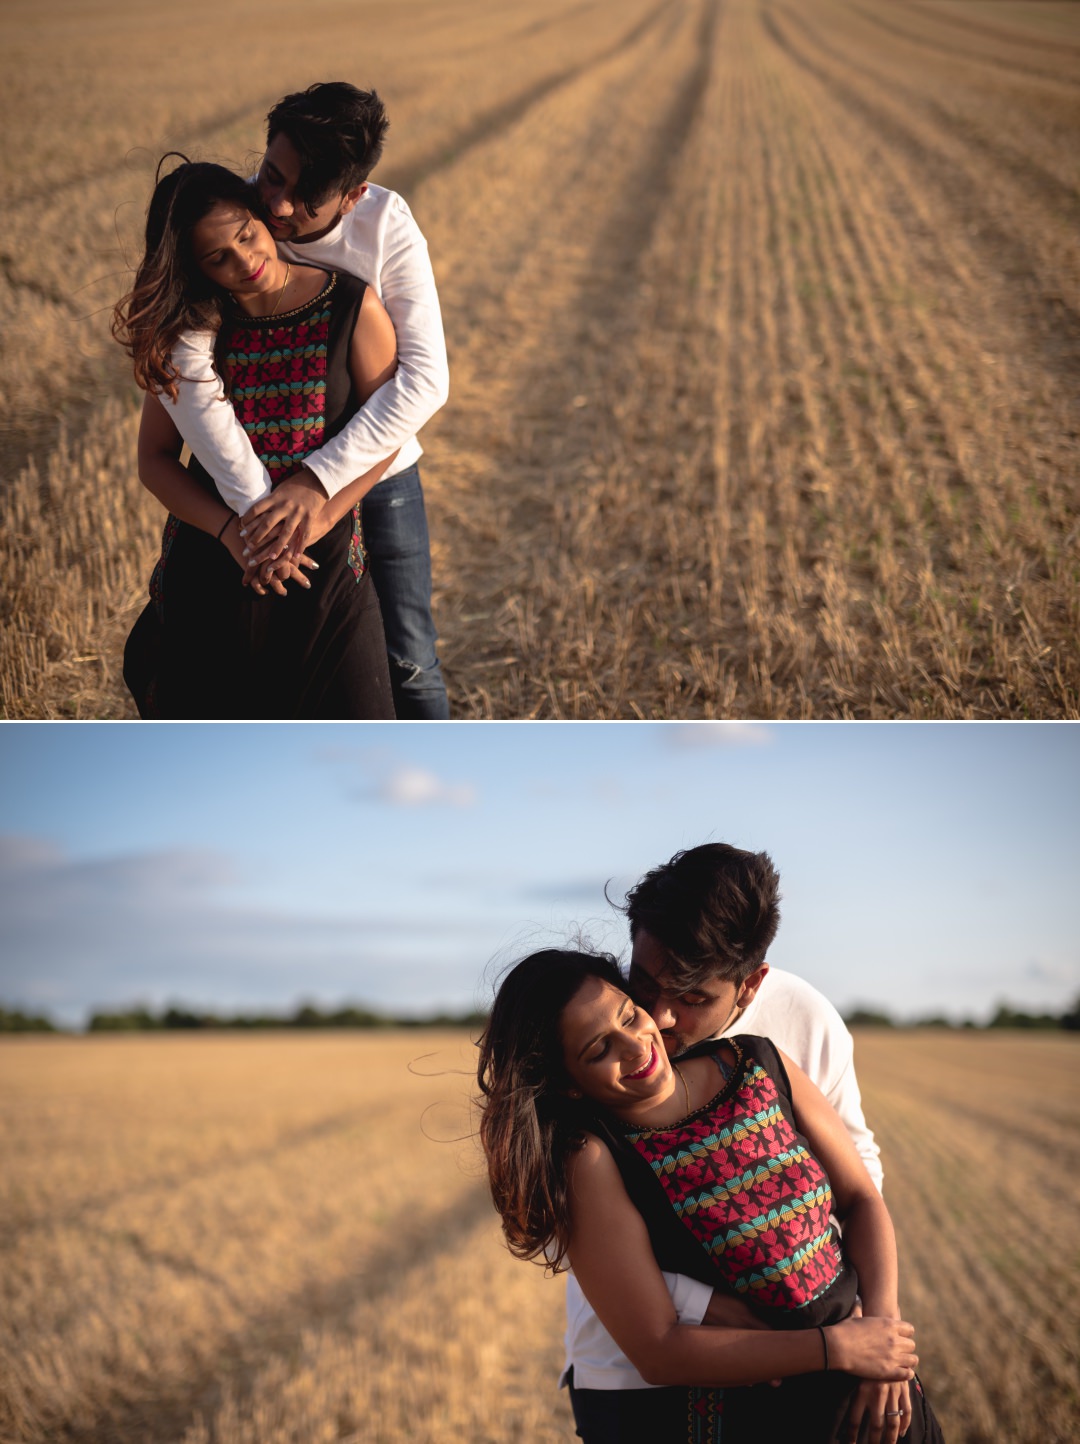 fun loving couple shoot in wheat field 